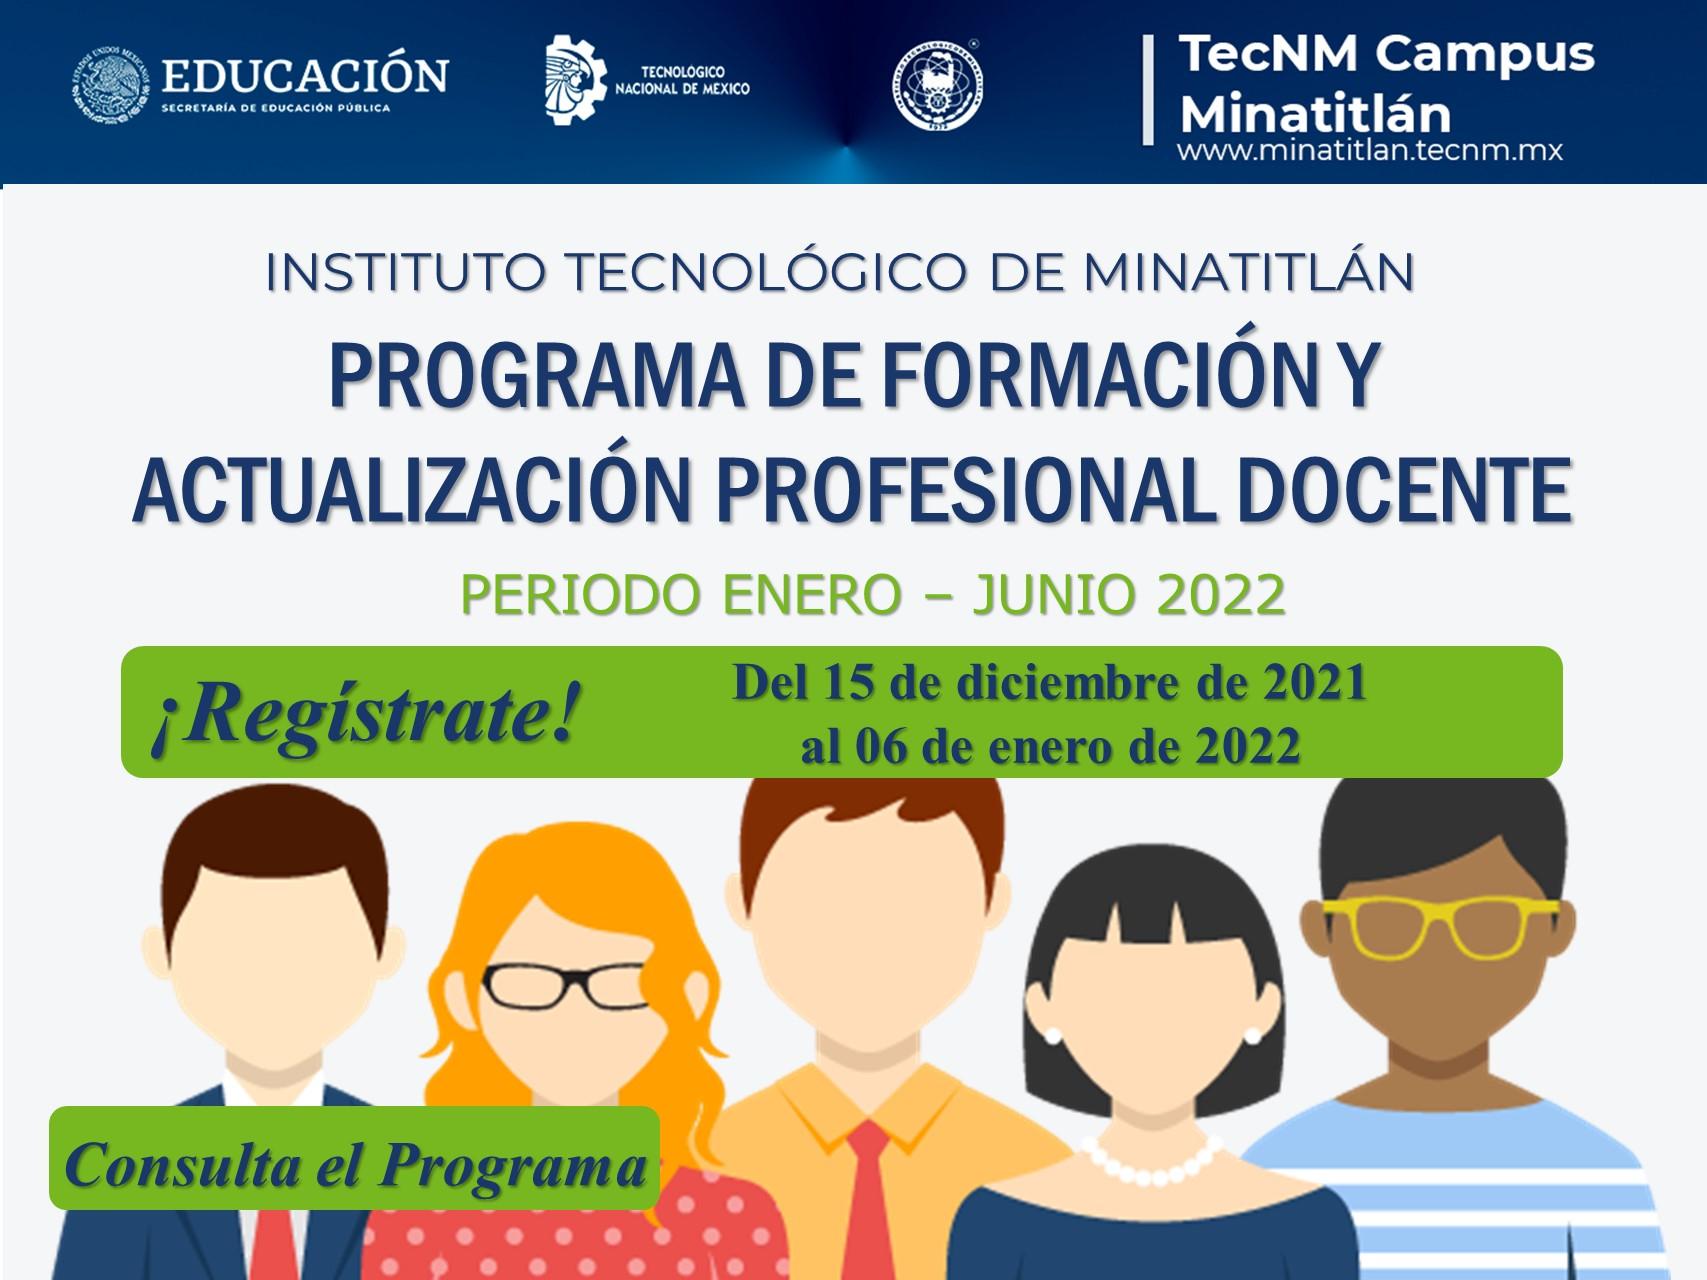 PROGRAMA DE FORMACIÓN Y ACTUALIZACIÓN PROFESIONAL DOCENTE (PERIODO ENERO – JUNIO 2022)